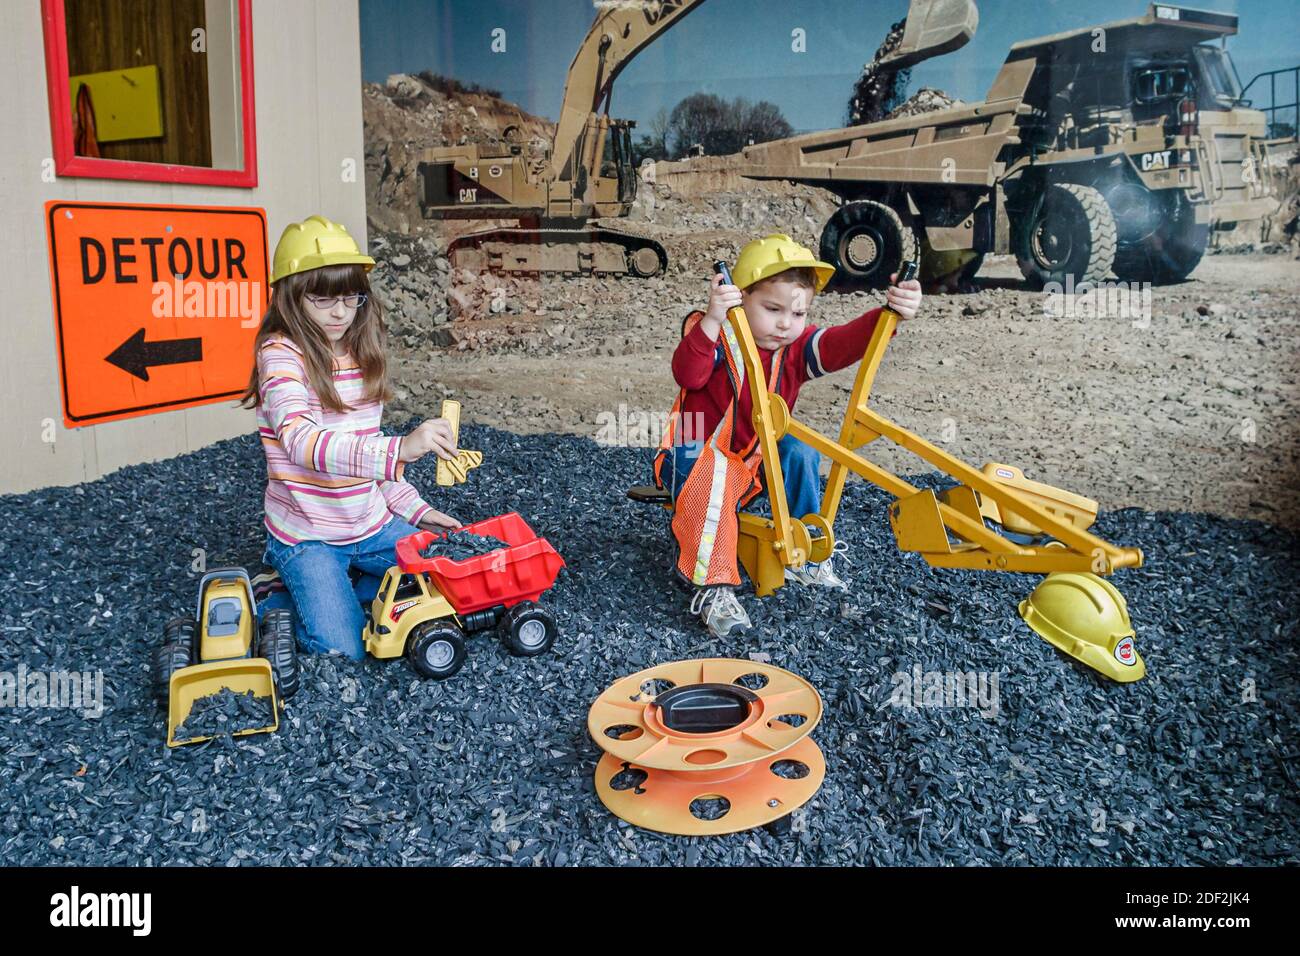 Alabama Gadsden Imagination Place, museo interactivo para niños, niña minera fingiendo jugar, Foto de stock